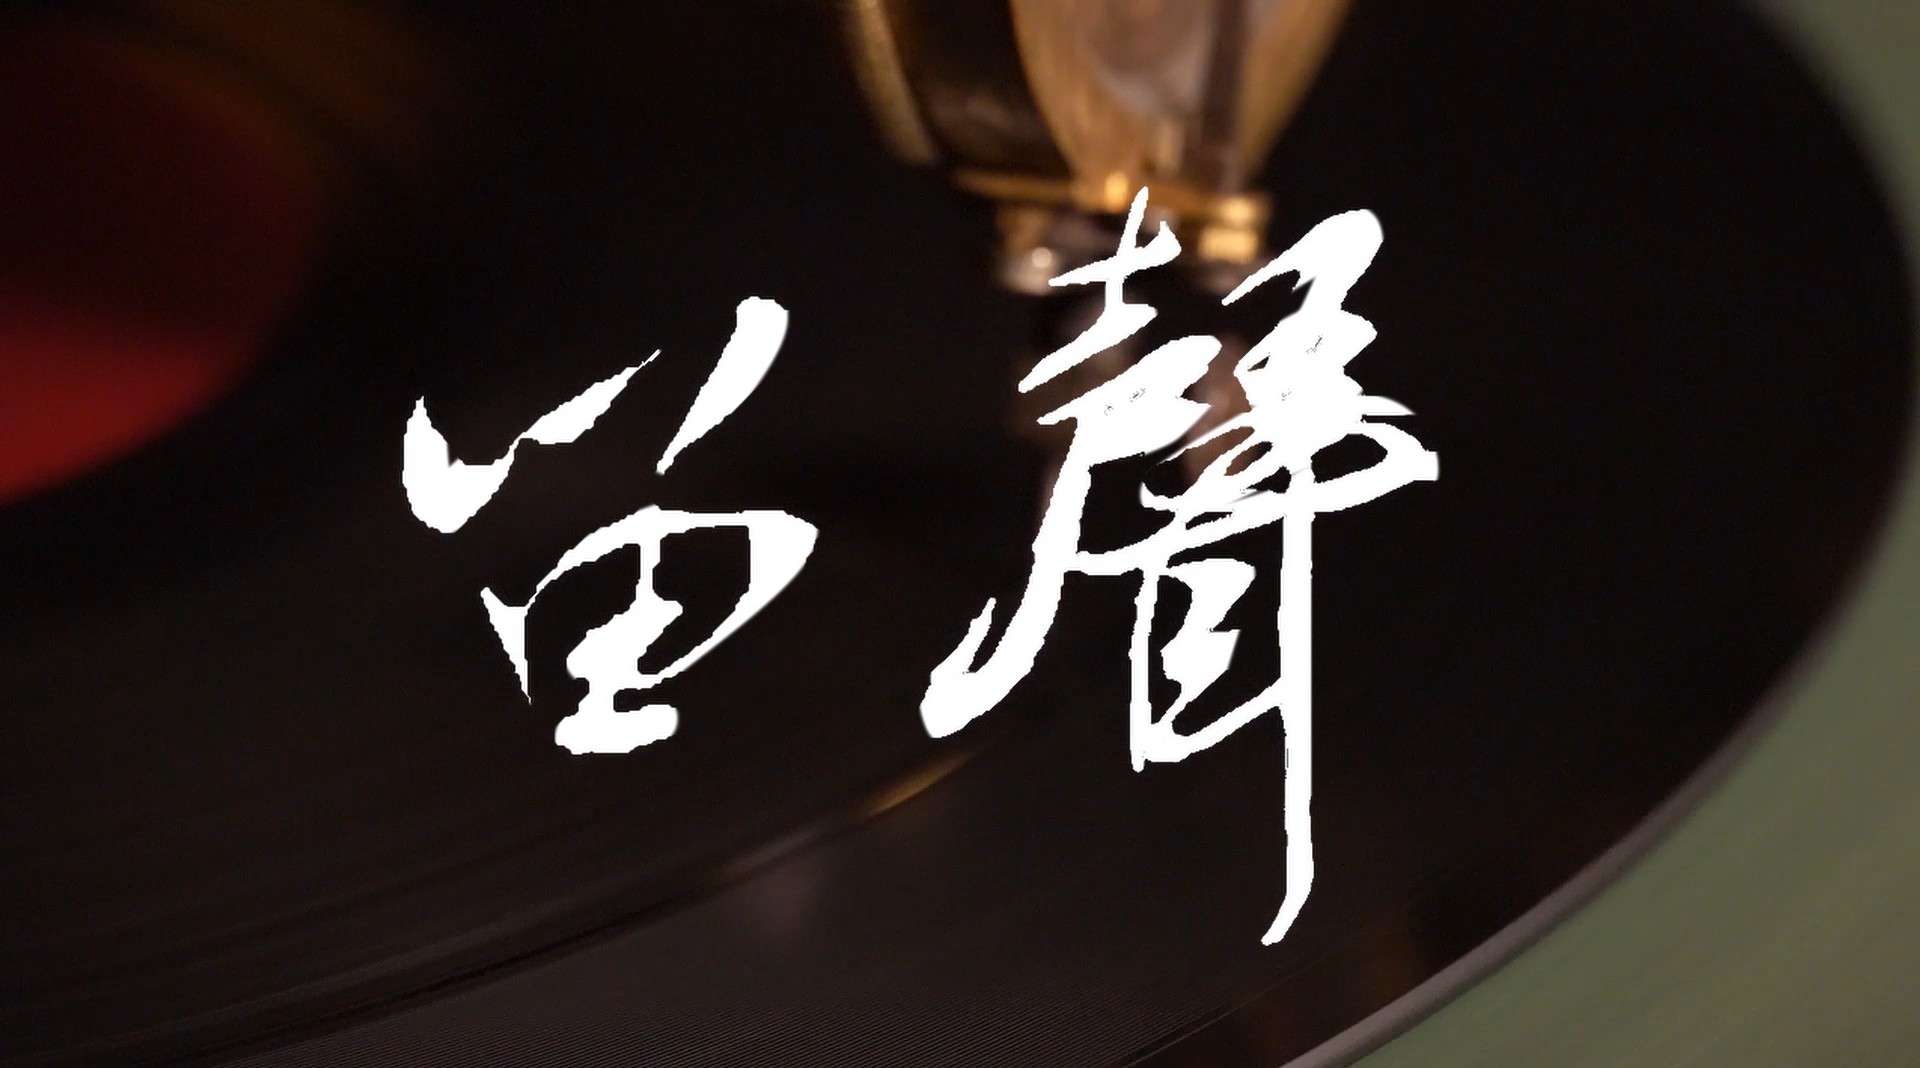 浙江传媒学院移动三脚架文化专题片《留声》